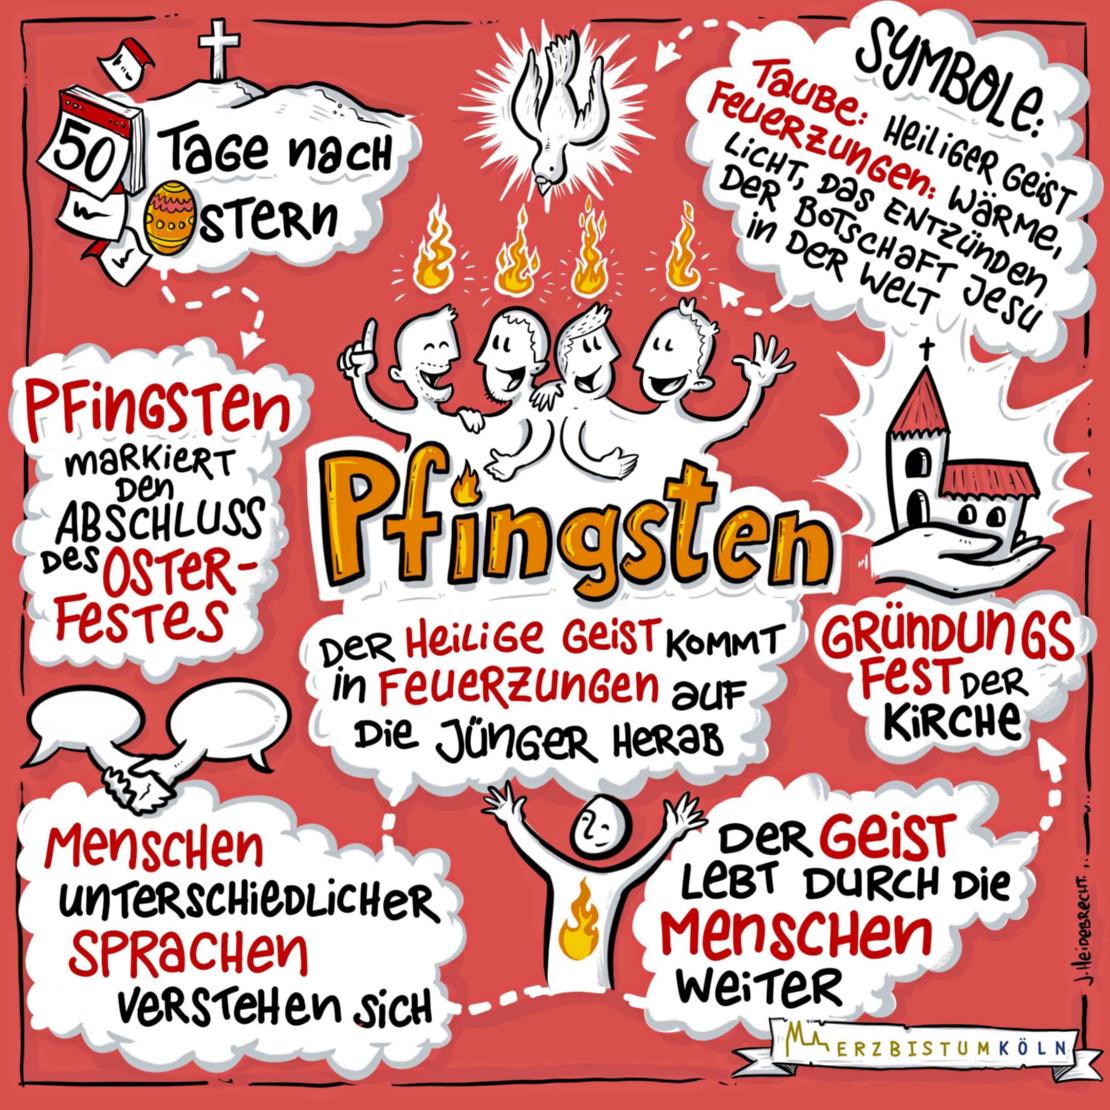 Pfingsten - schnell erklärt (c) Heidebrecht Frei (Erzbistum Köln) - www.pfarrbriefservice.de